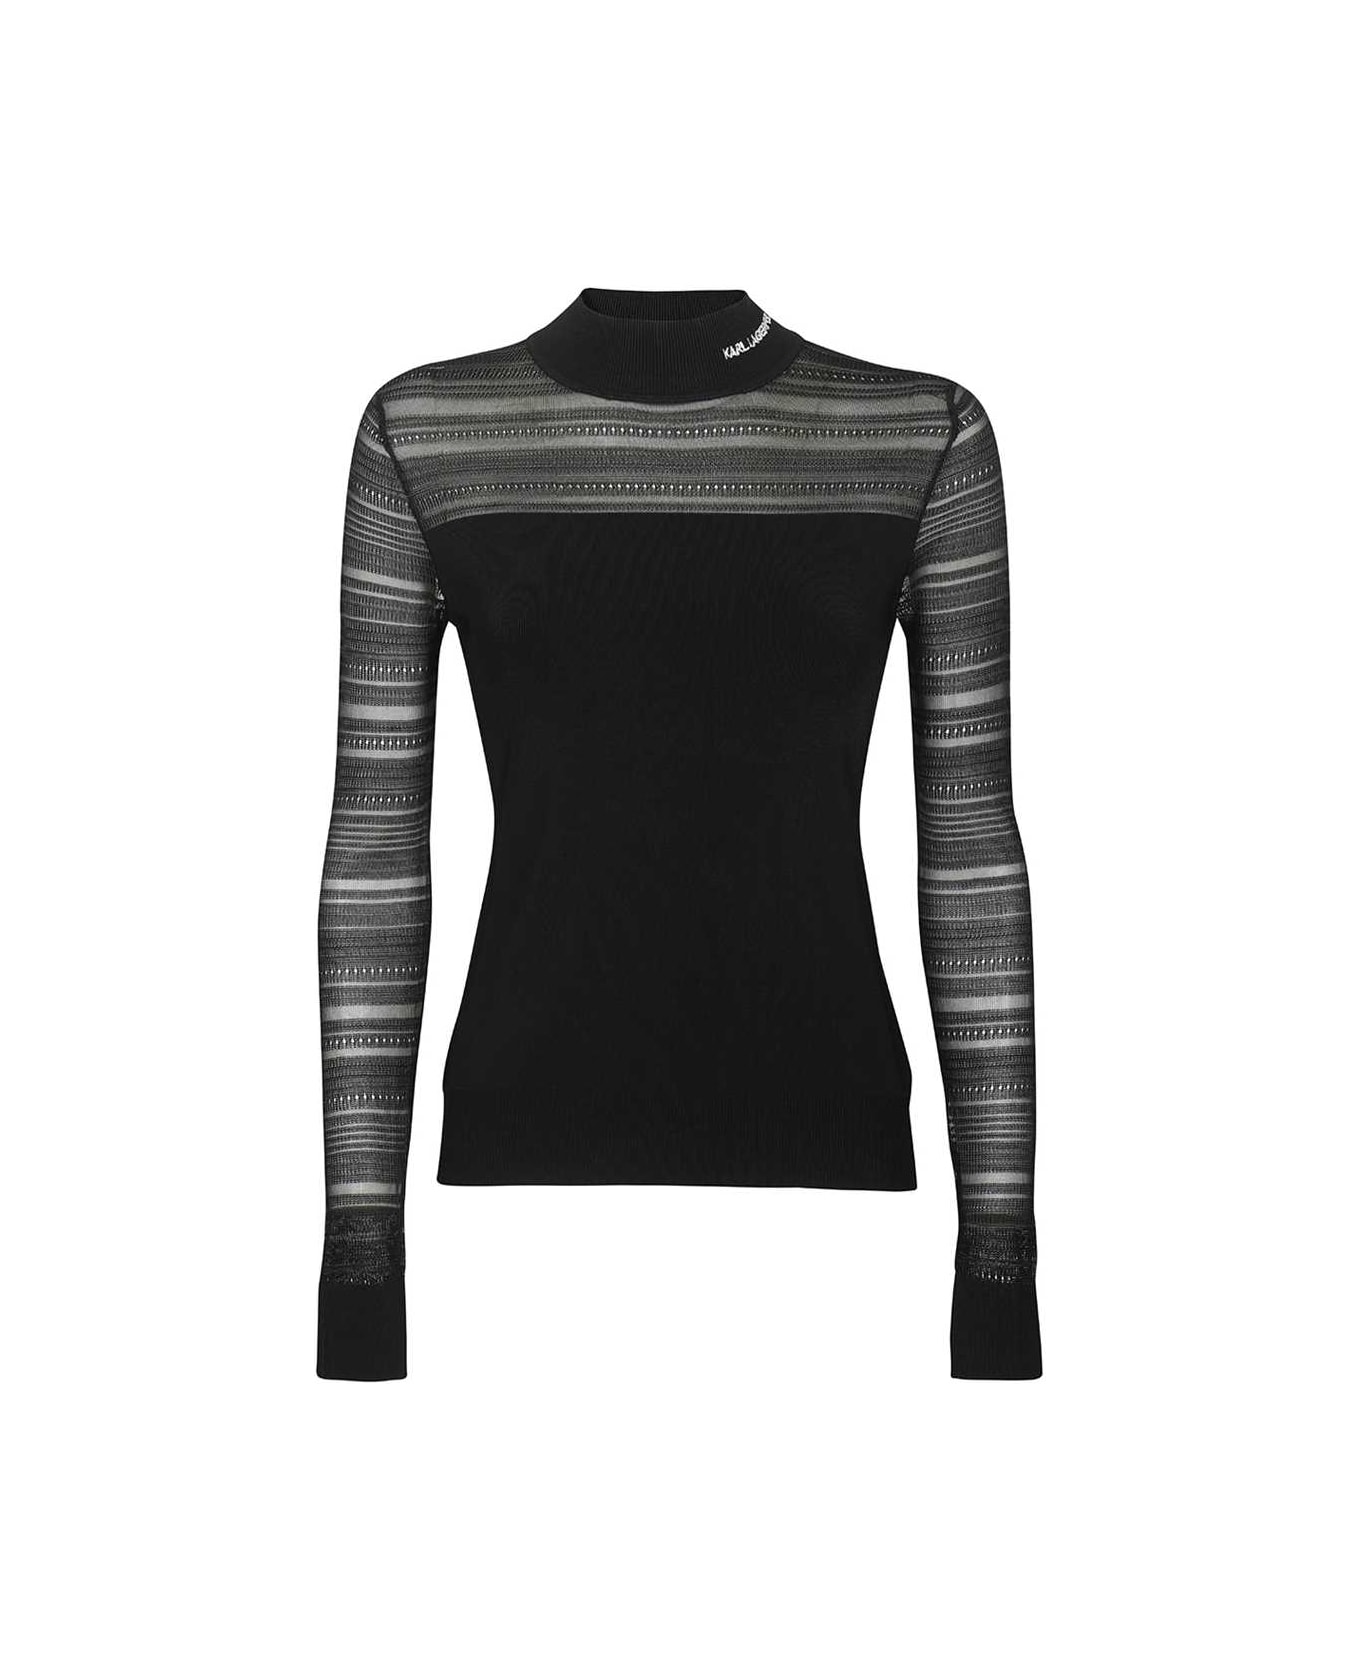 Karl Lagerfeld Turtleneck Sweater - black ニットウェア